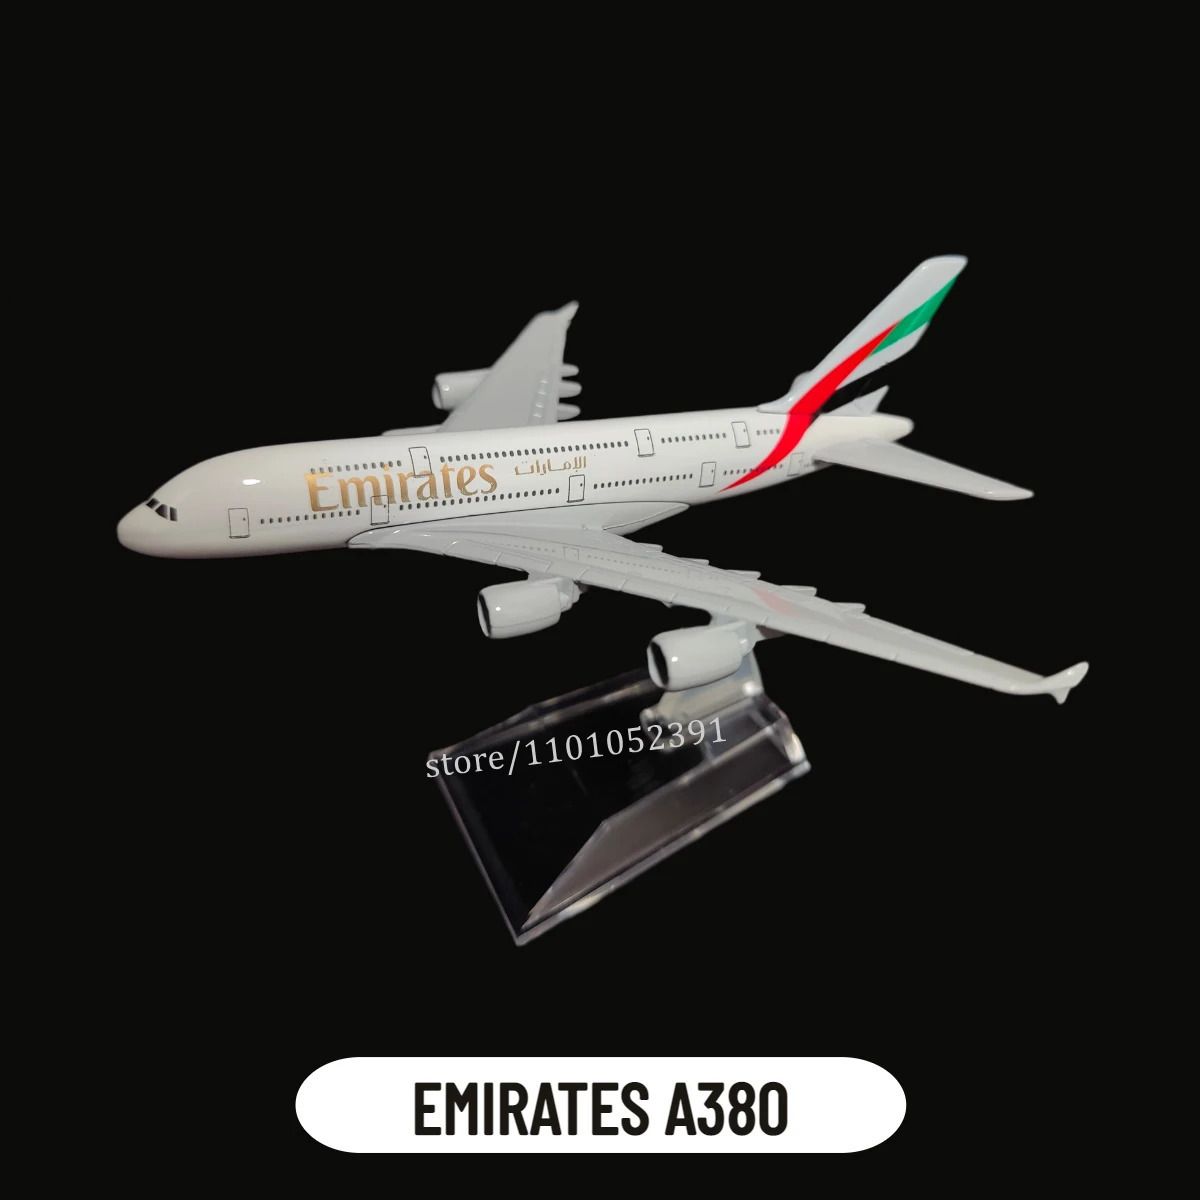 4.émirats A380